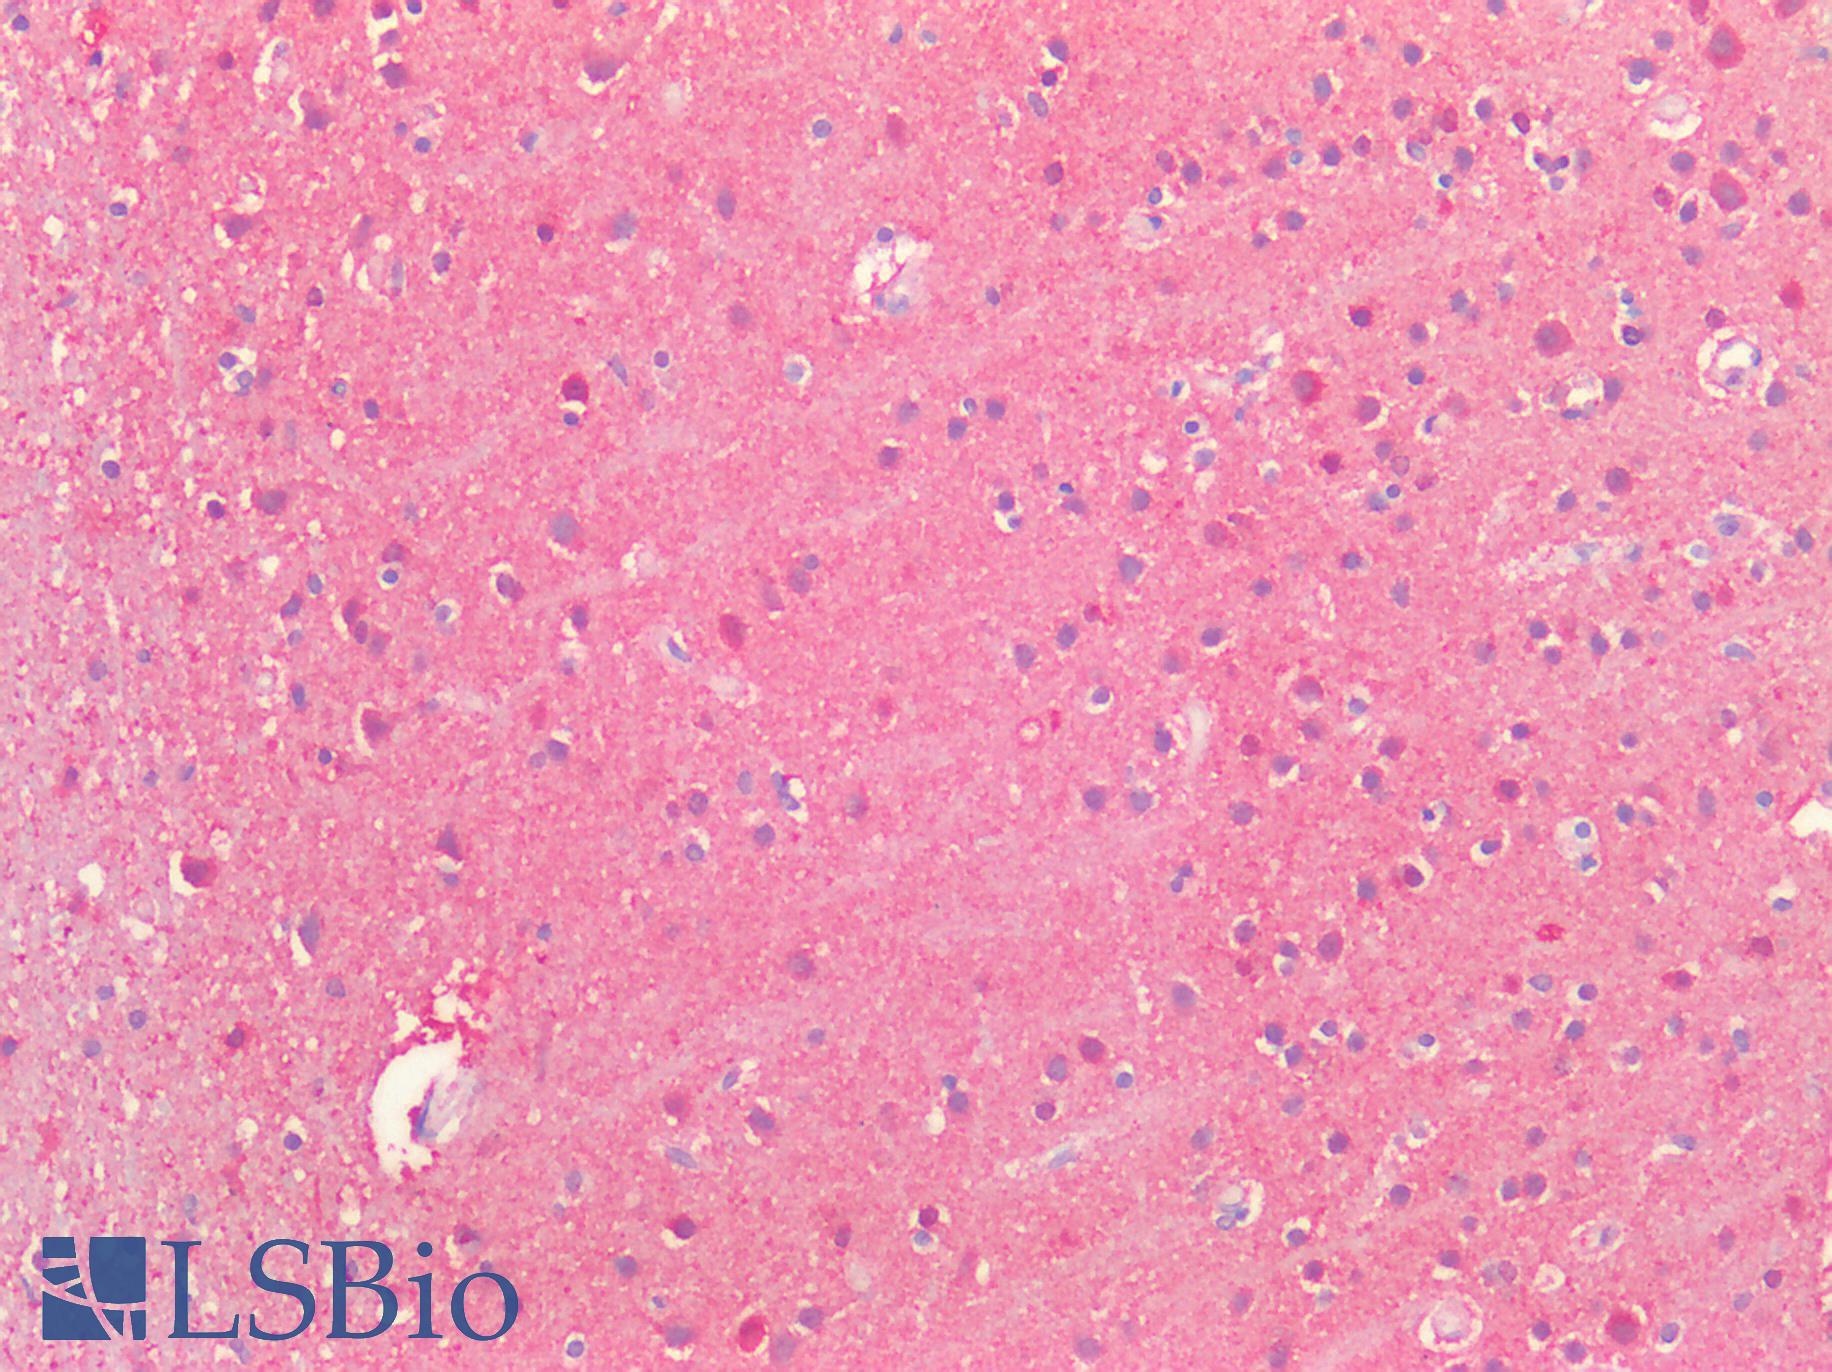 SLC2A13 / HMIT / GLUT13 Antibody - Human Brain, Cortex: Formalin-Fixed, Paraffin-Embedded (FFPE)